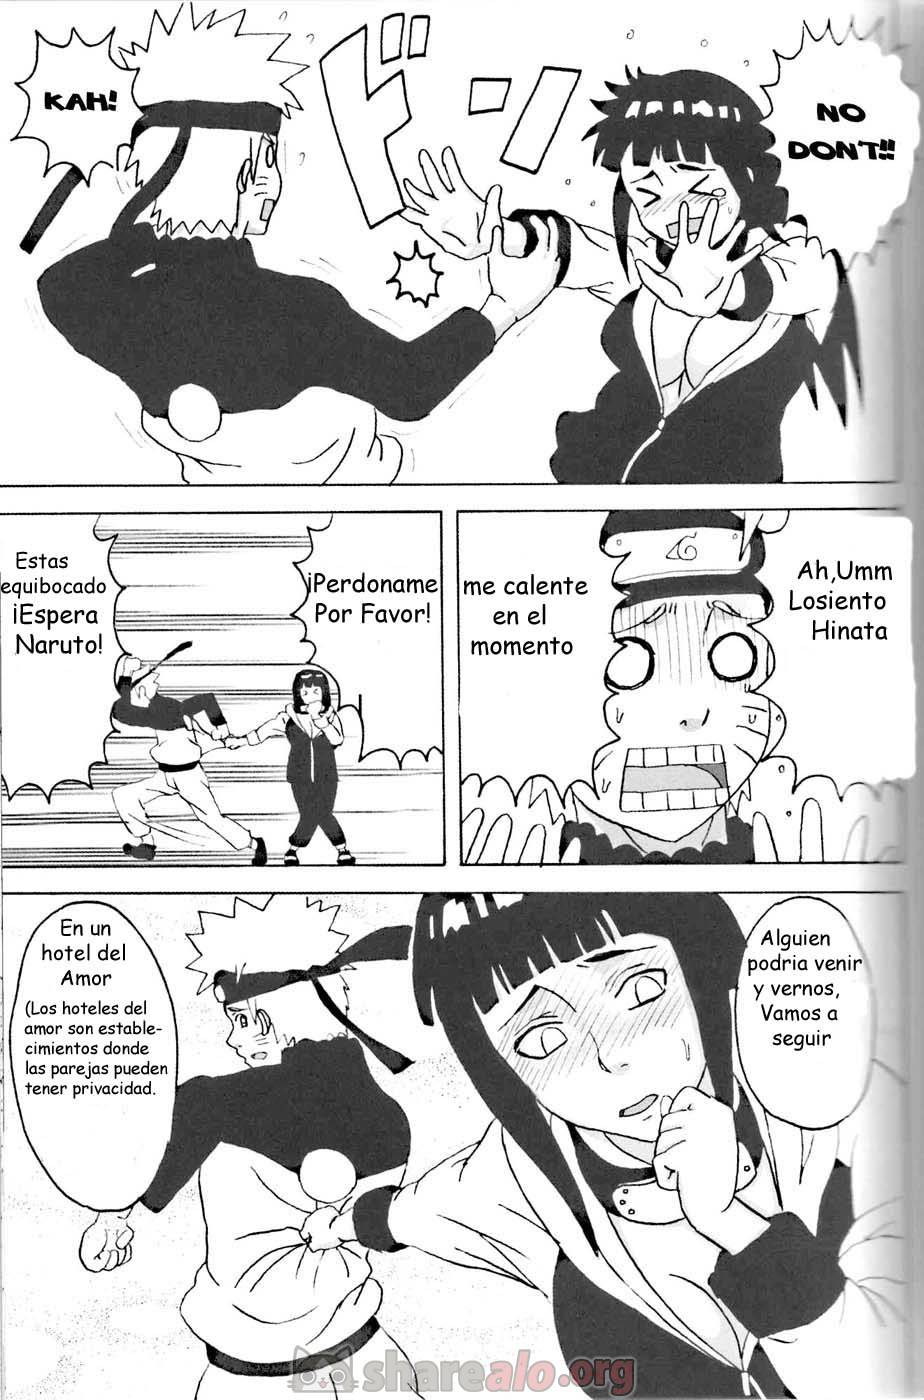 Hinata Ganbaru Doujin - 10 - Comics Porno - Hentai Manga - Cartoon XXX